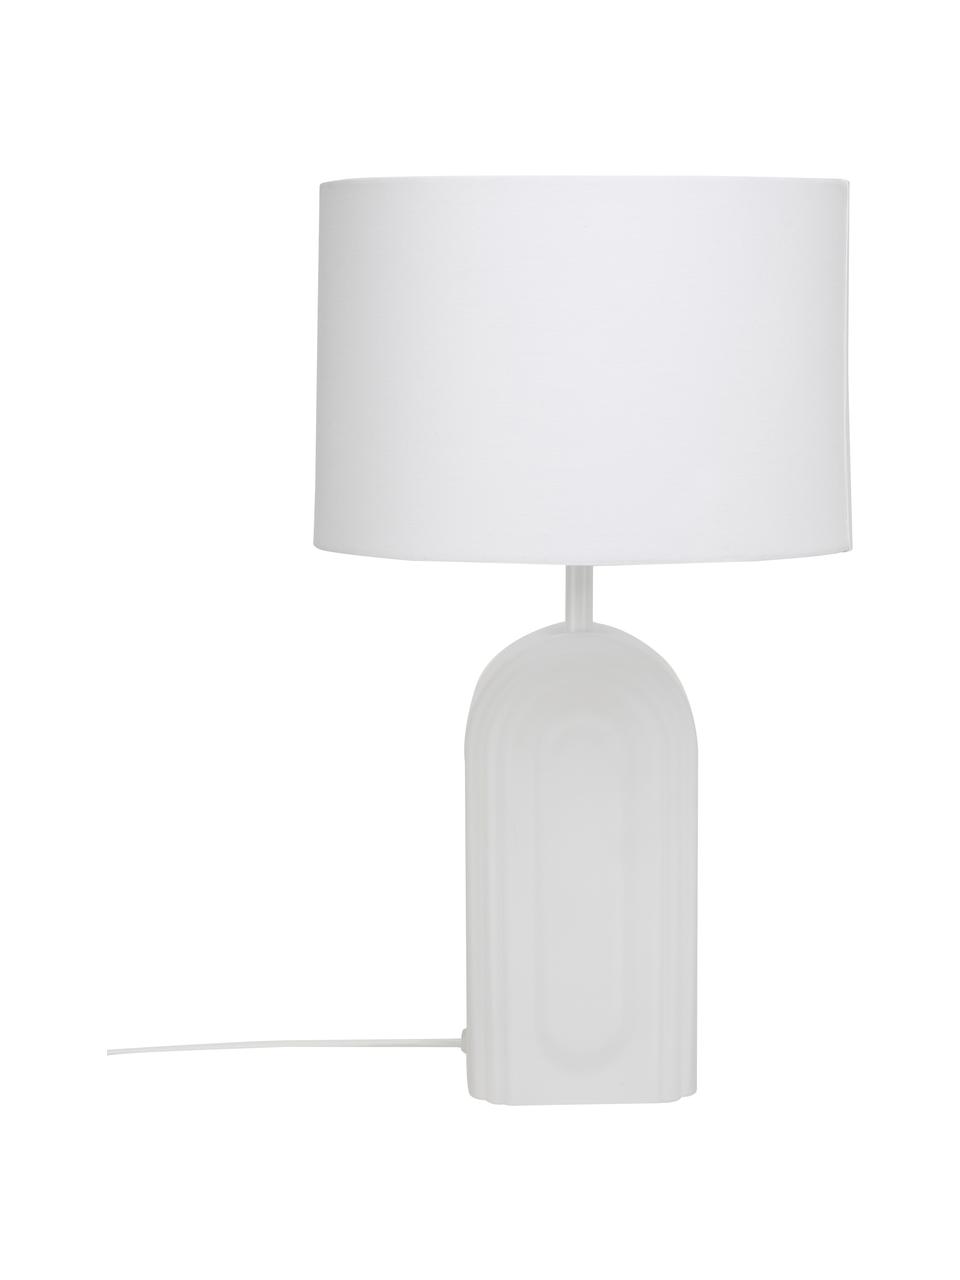 Lampada da tavolo con base in vetro Bela, Paralume: cotone, Base della lampada: vetro, Bianco, Ø 30 x Alt. 50 cm